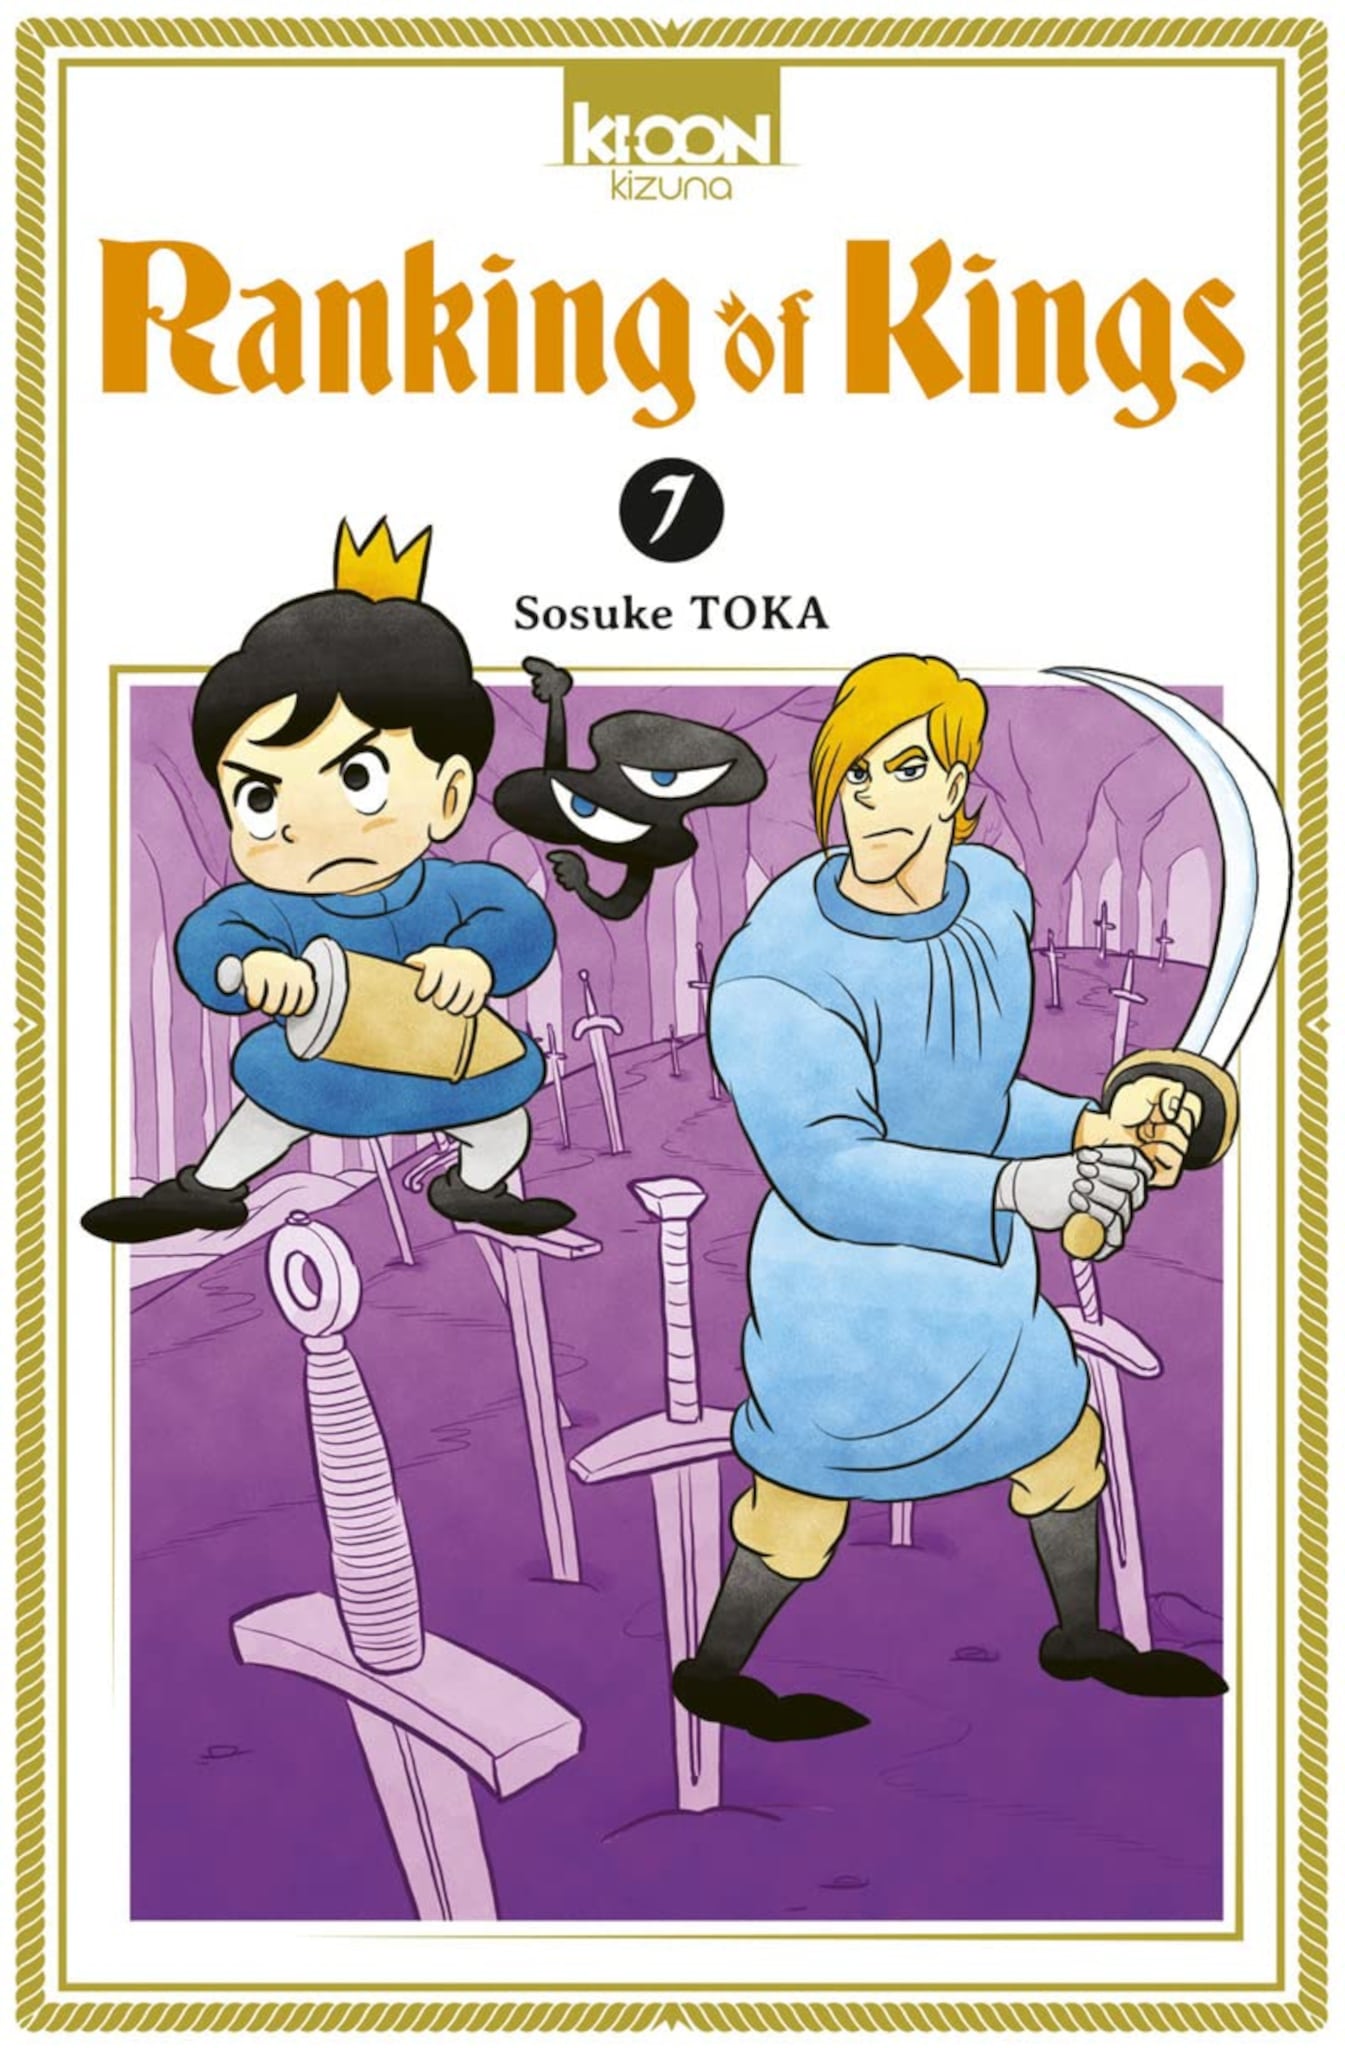 Tome 7 du manga Ranking of Kings